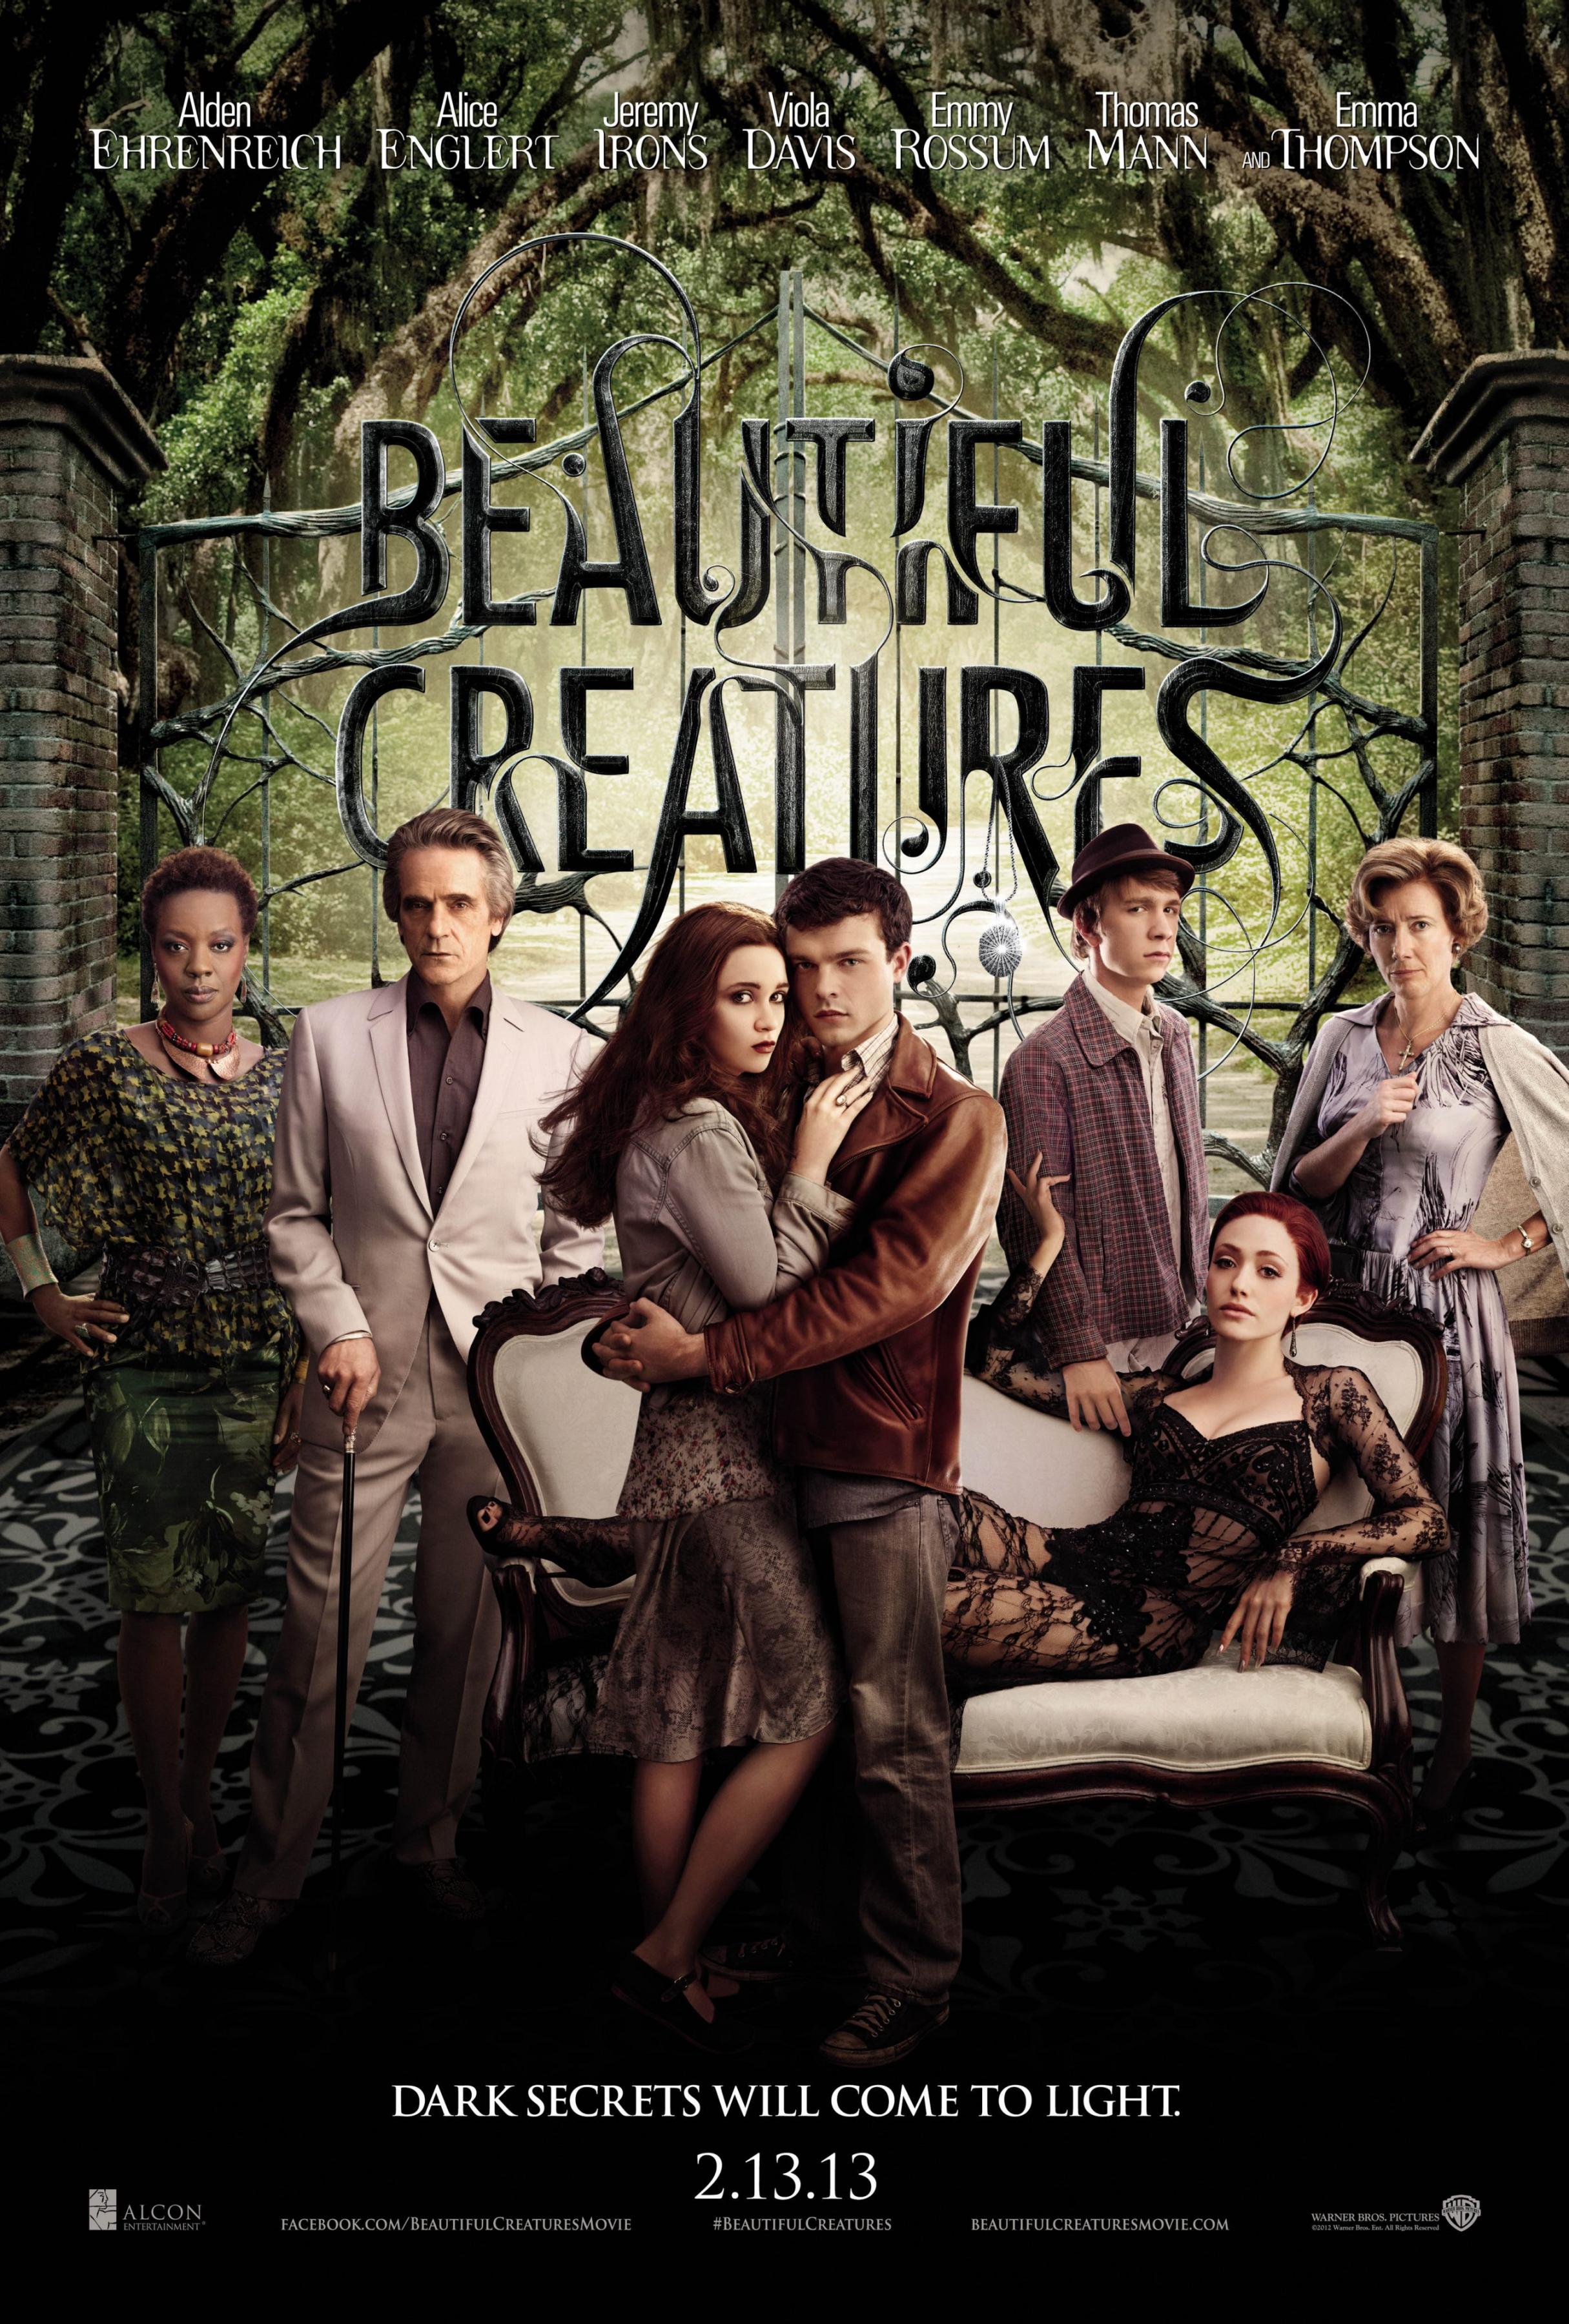 Постер фильма Прекрасные создания | Beautiful Creatures